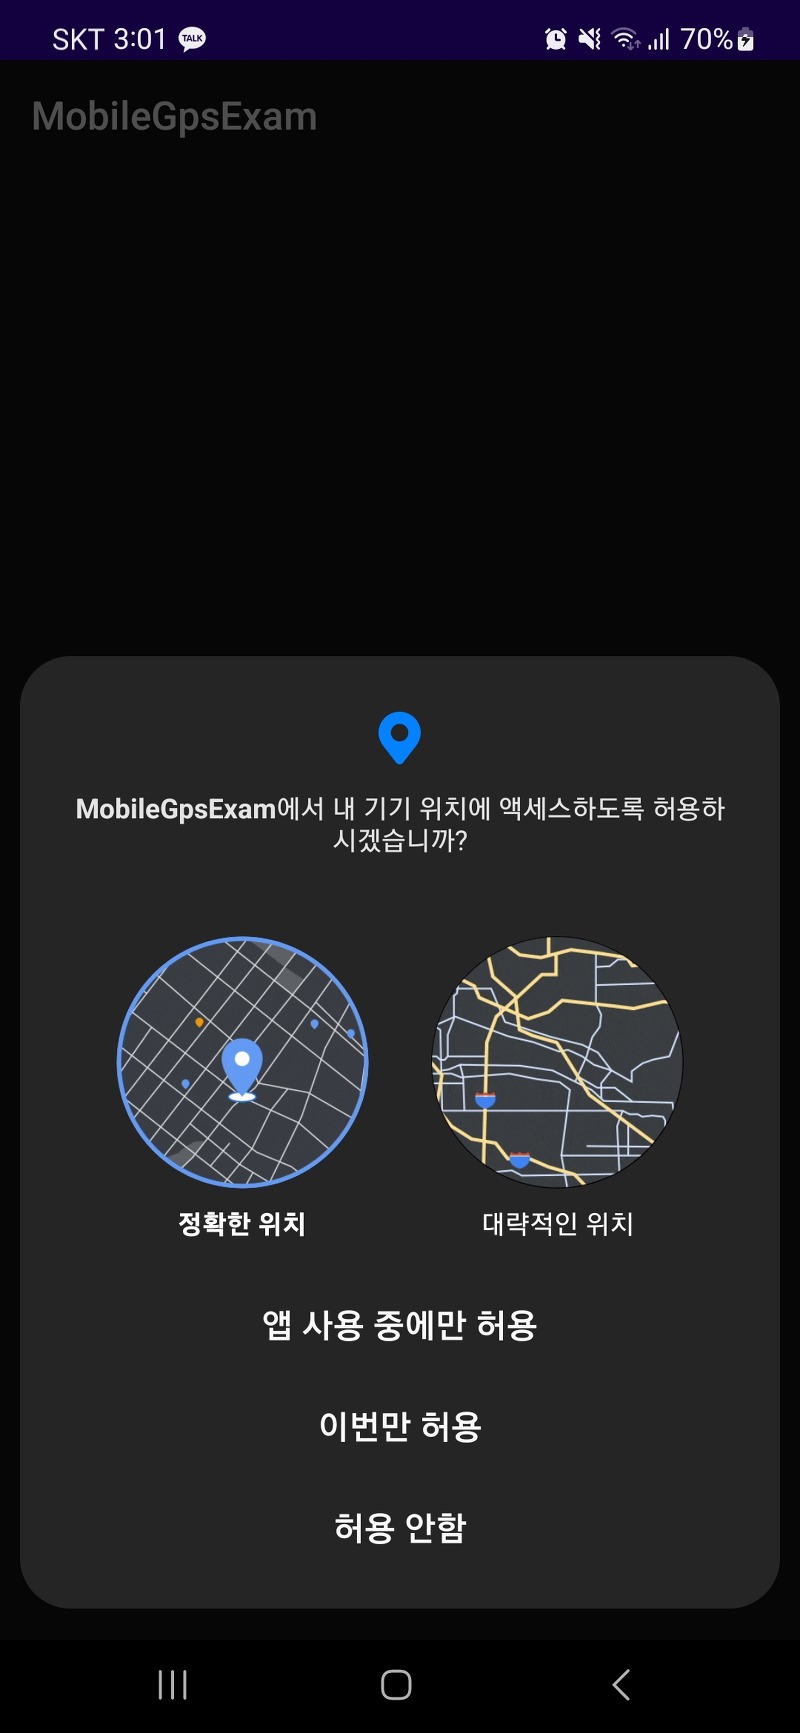 [안드로이드] 내 GPS 위치정보 + 상세주소 불러오기 - Google's Location Service